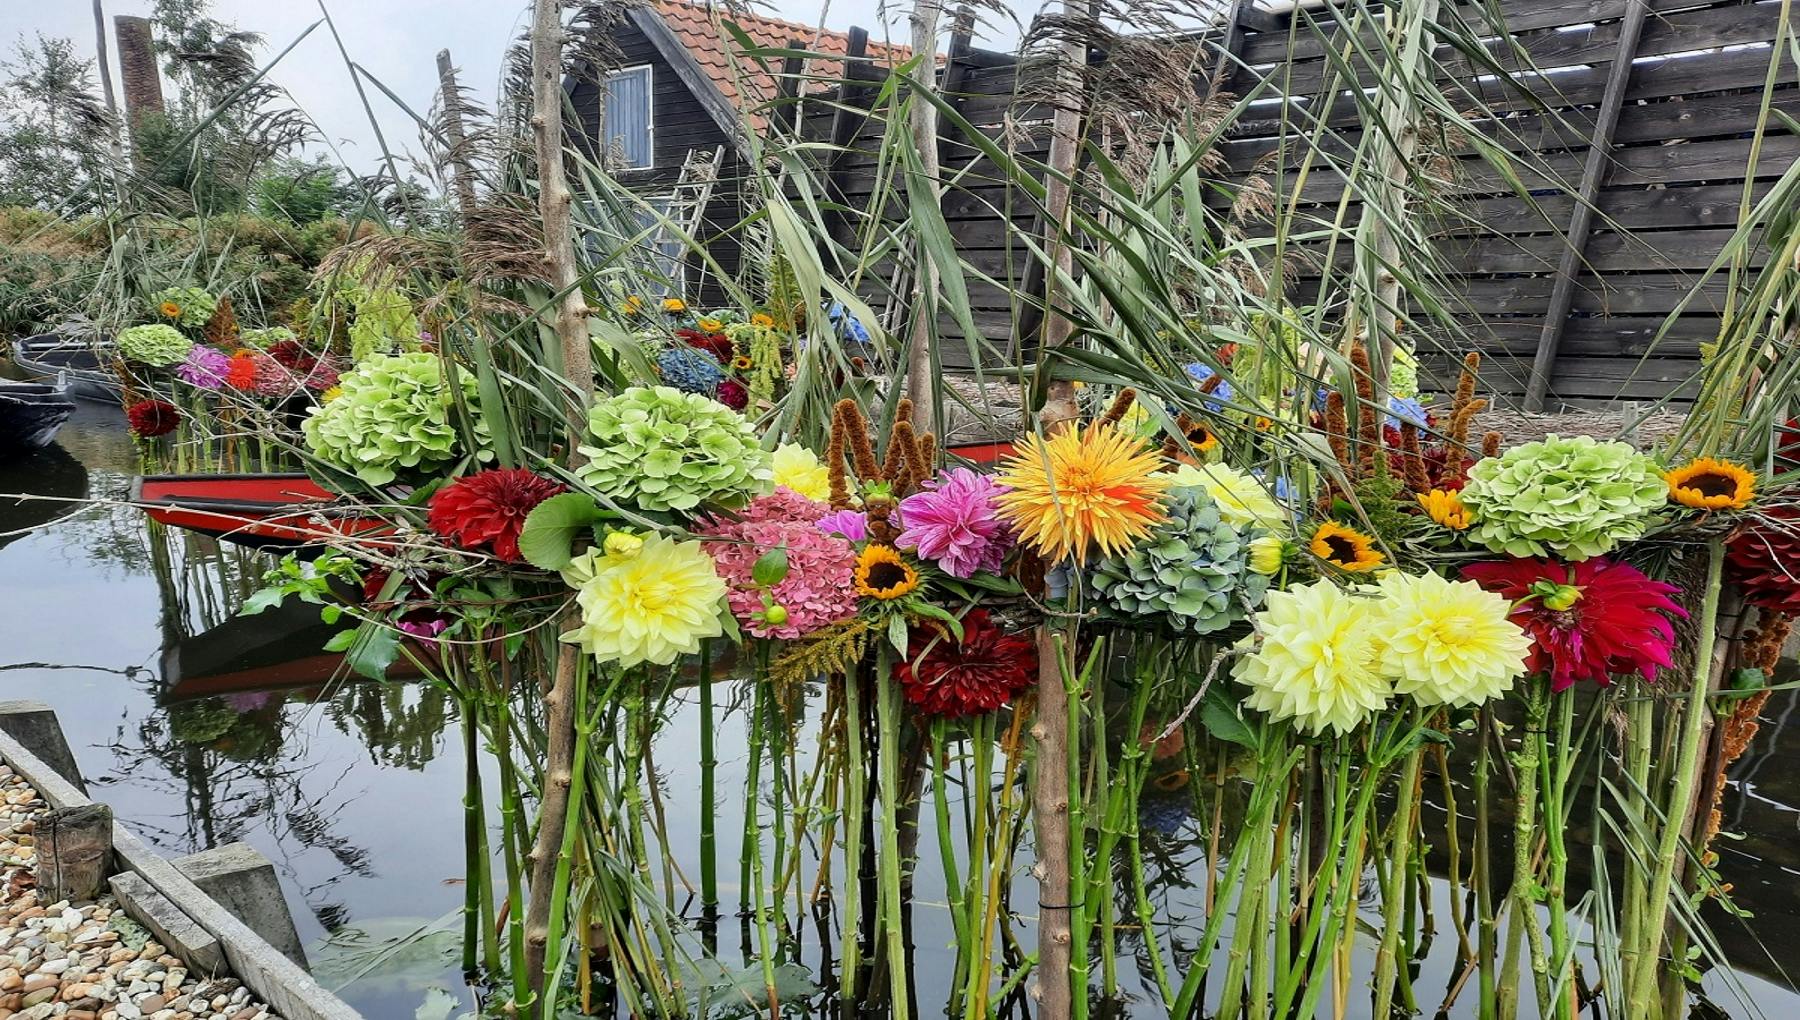 Aalsmeer Flower Festival